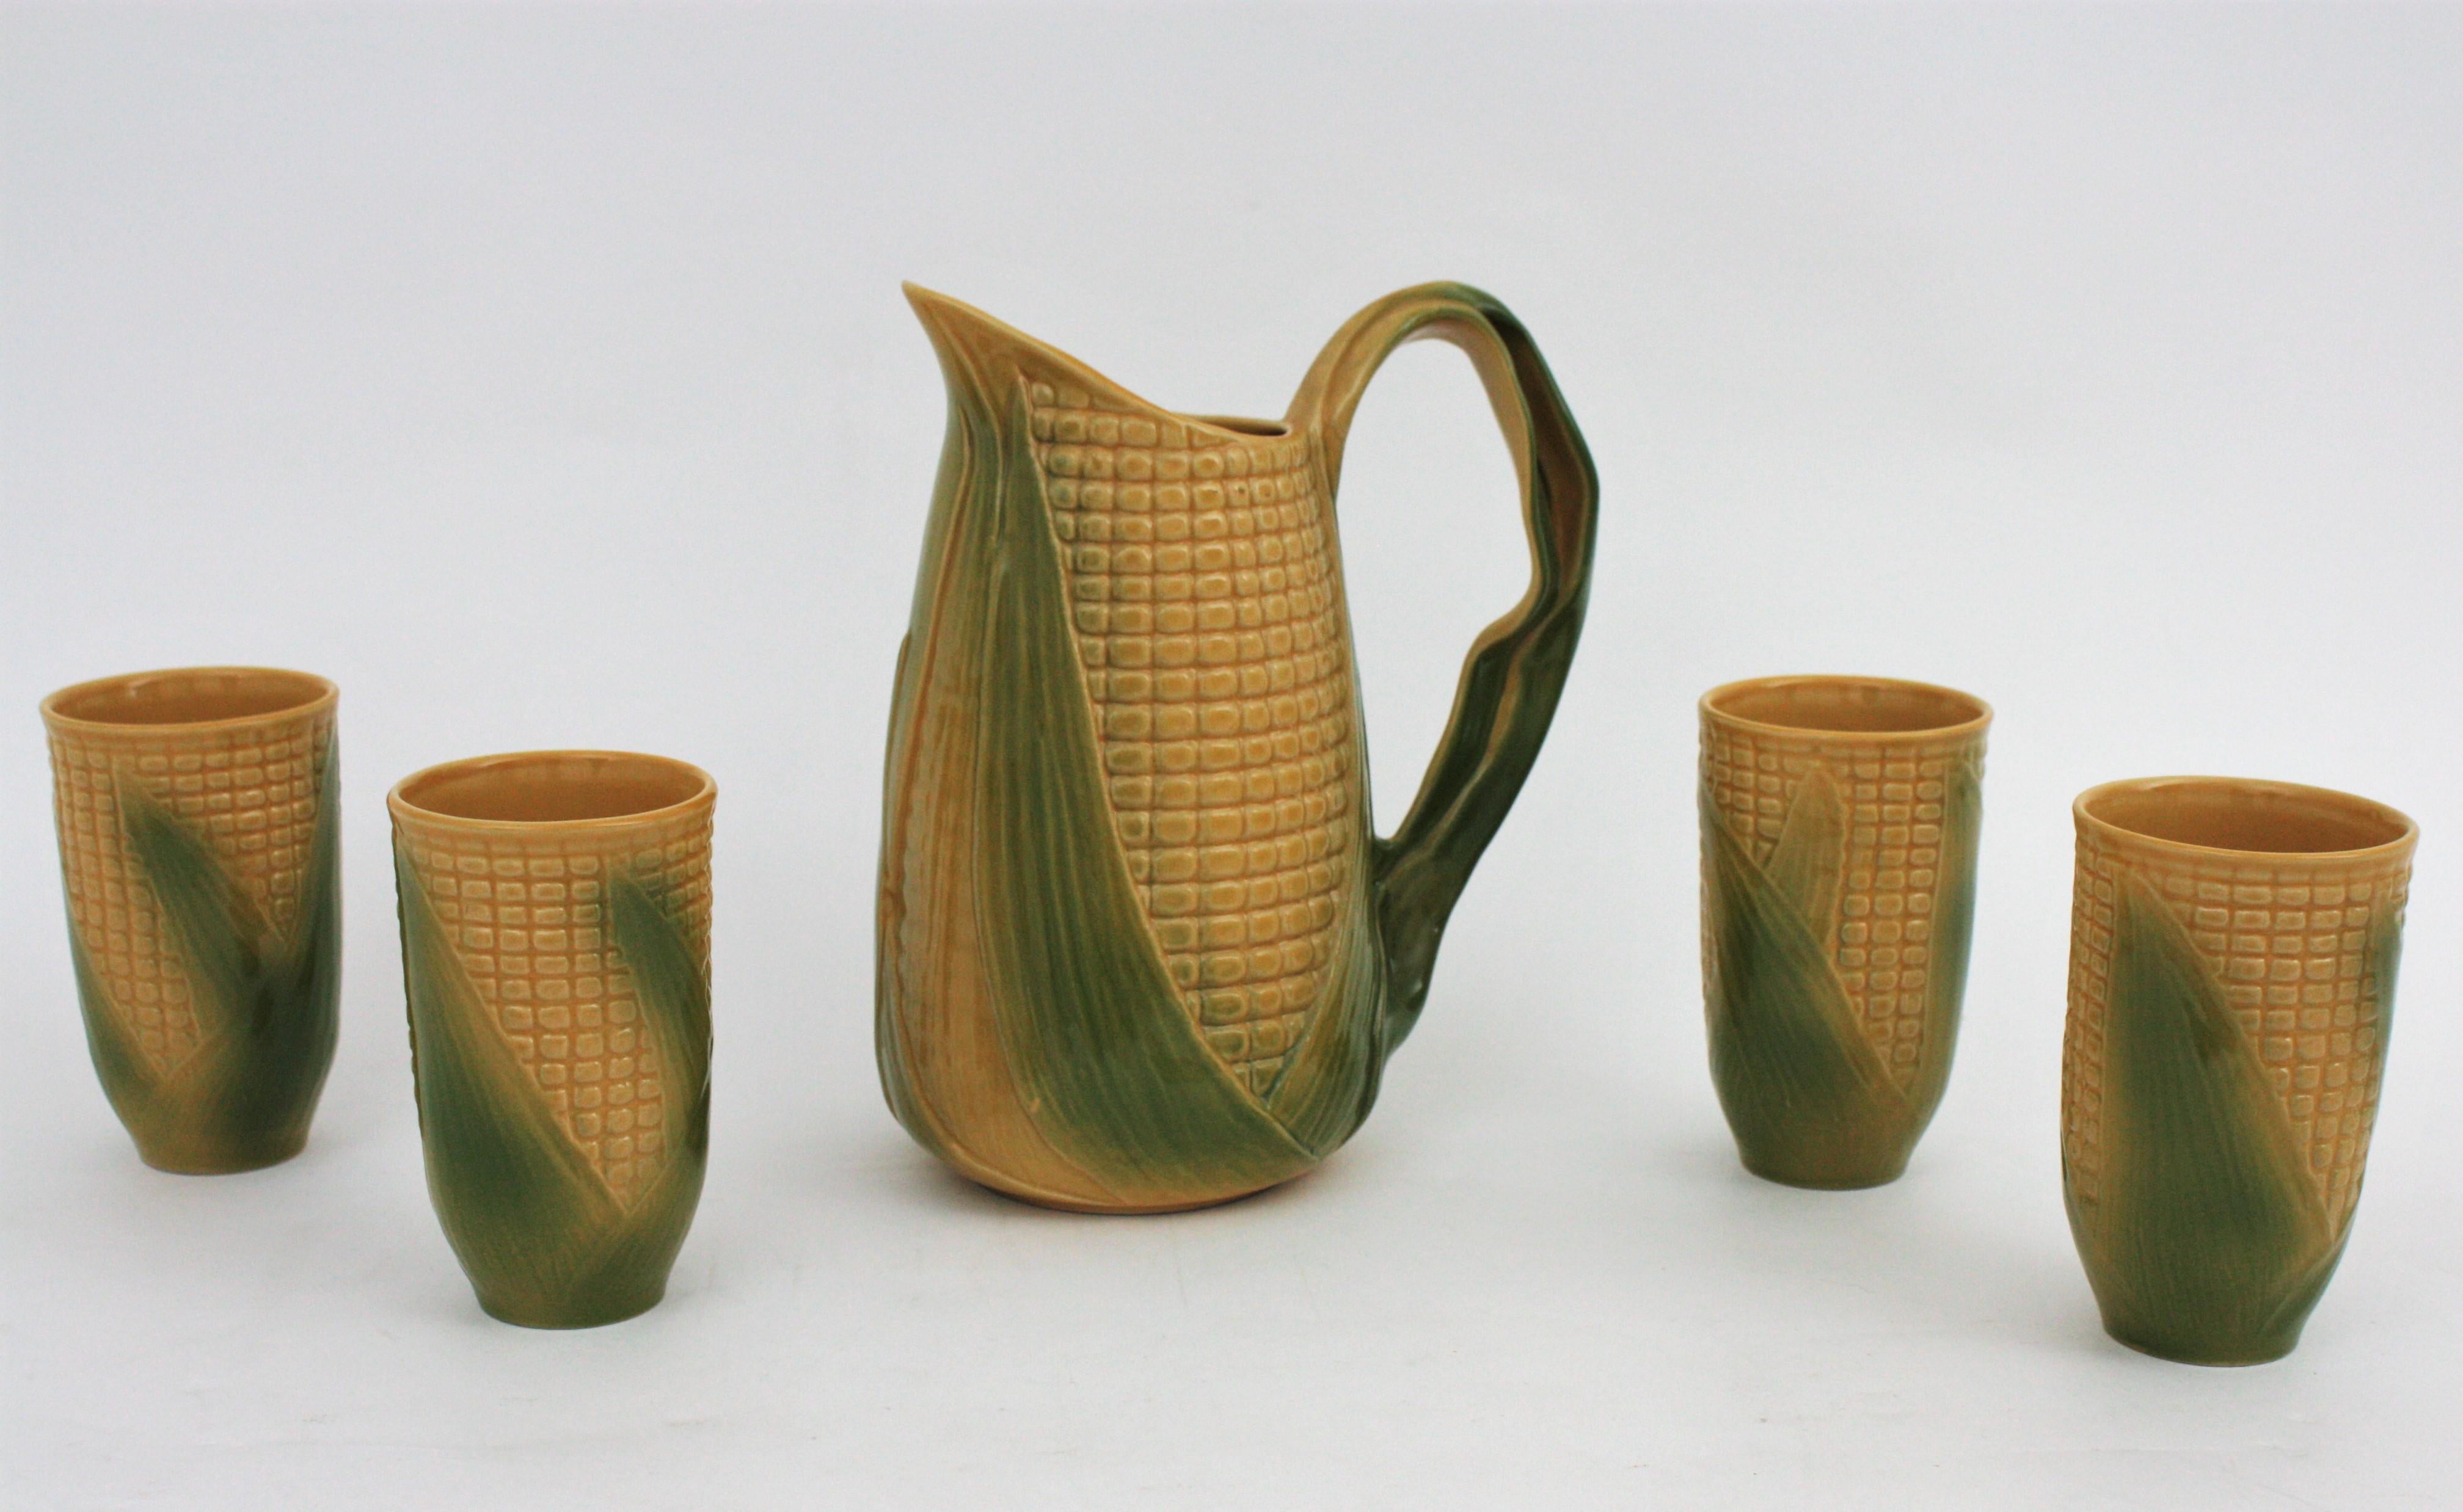 Ensemble de quatre pichets et gobelets à épis de maïs en céramique émaillée Majolica. France, années 1960.
L'ensemble est composé d'un grand pichet en céramique avec la forme d'un épi de maïs et de quatre verres en céramique avec le même